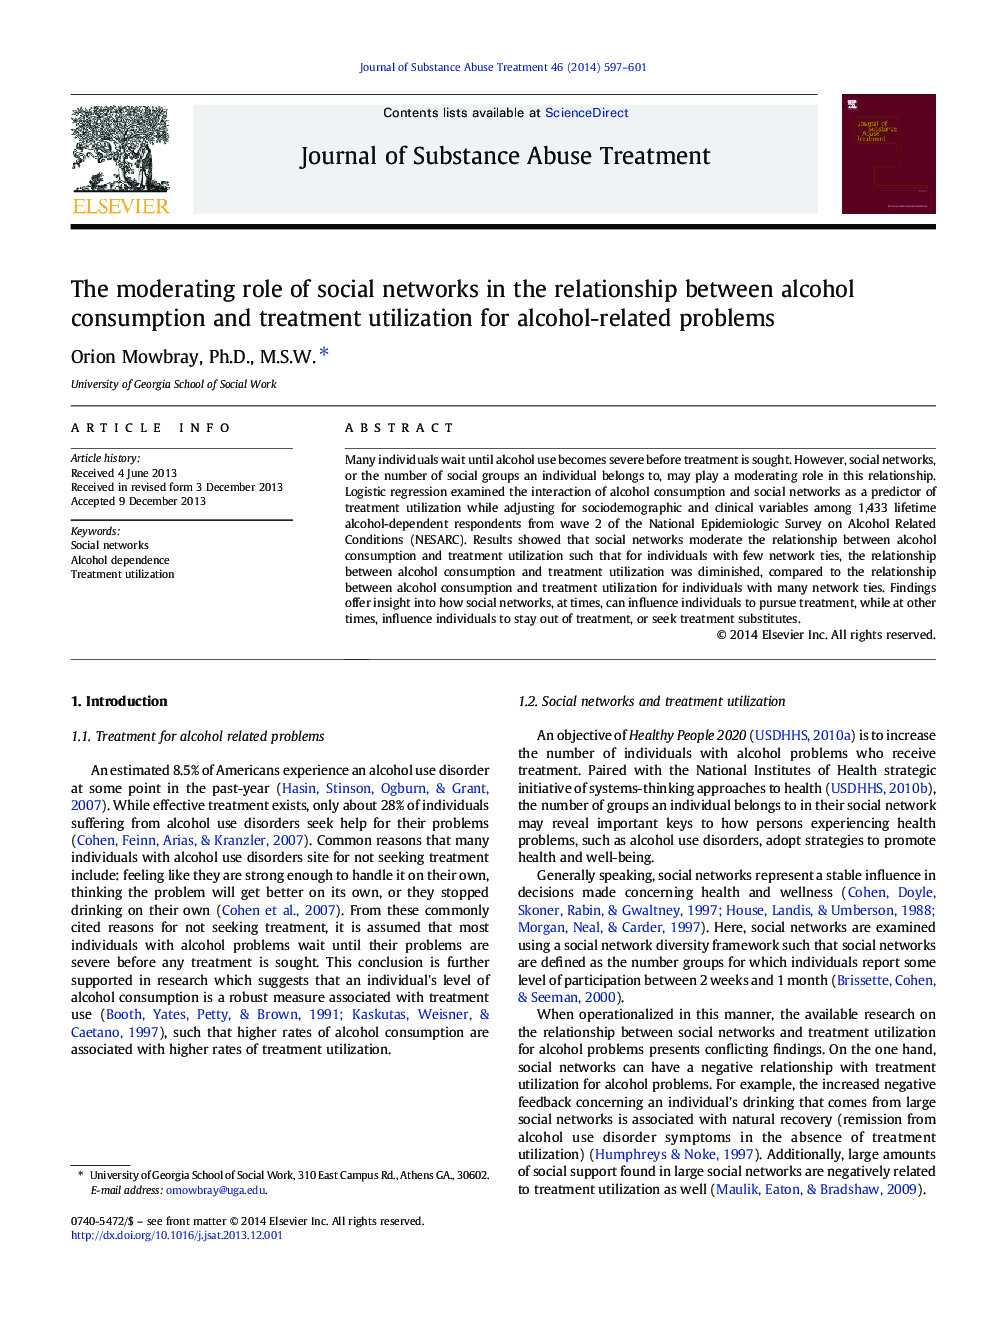 نقش تعدیل کننده شبکه های اجتماعی در ارتباط بین مصرف الکل و استفاده از درمان برای مشکلات مرتبط با الکل 